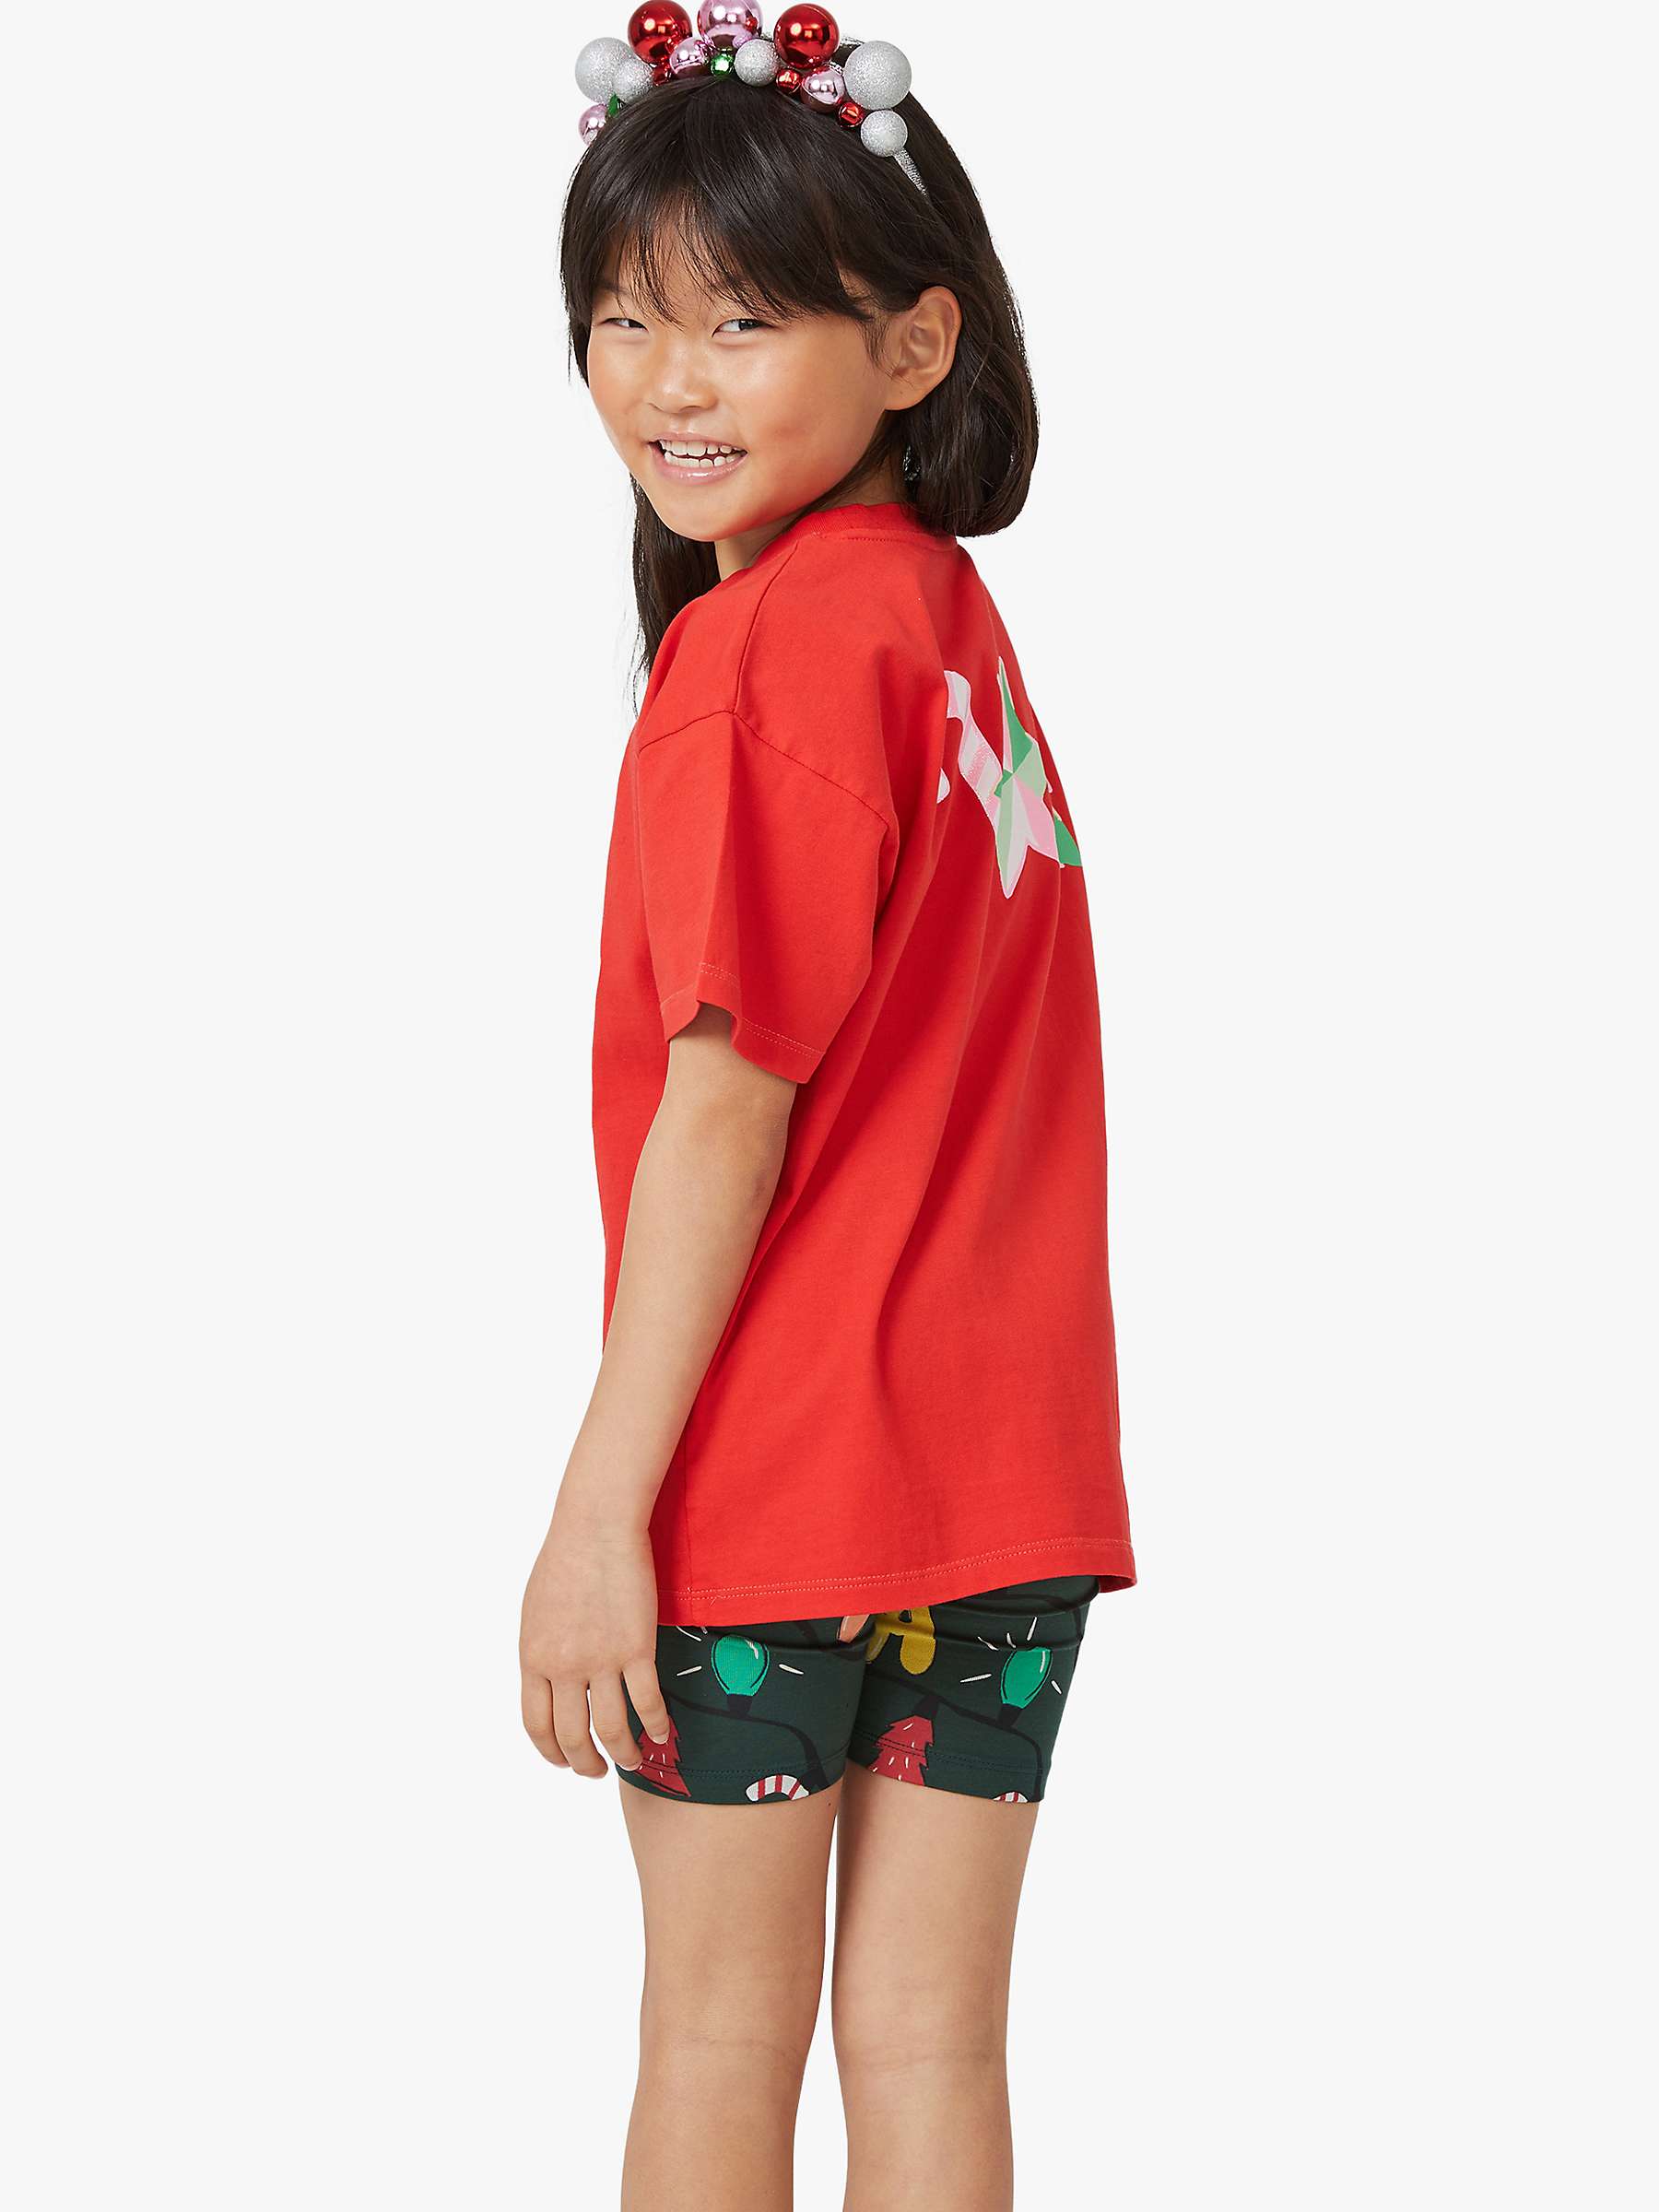 Buy Cotton On Kids' Fa La La Cotton T-Shirt, Red Online at johnlewis.com